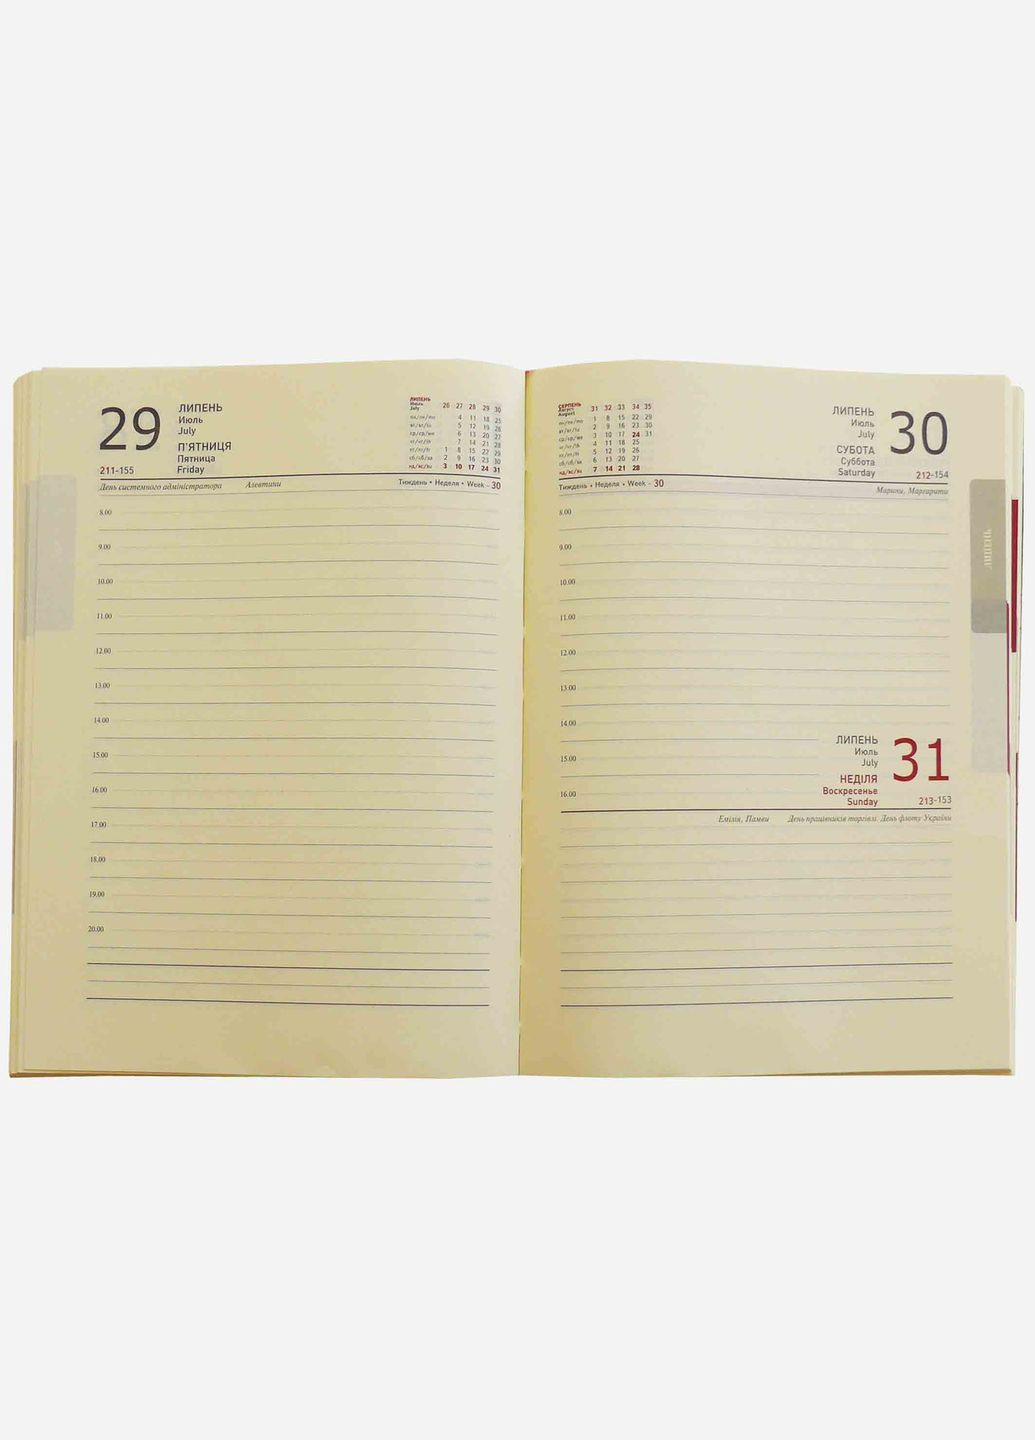 Дневник датированный 2024 год, срез блока золото "Рамка Львов" бордовый А5, Библесс, искусственная кожа Бібльос (281999540)